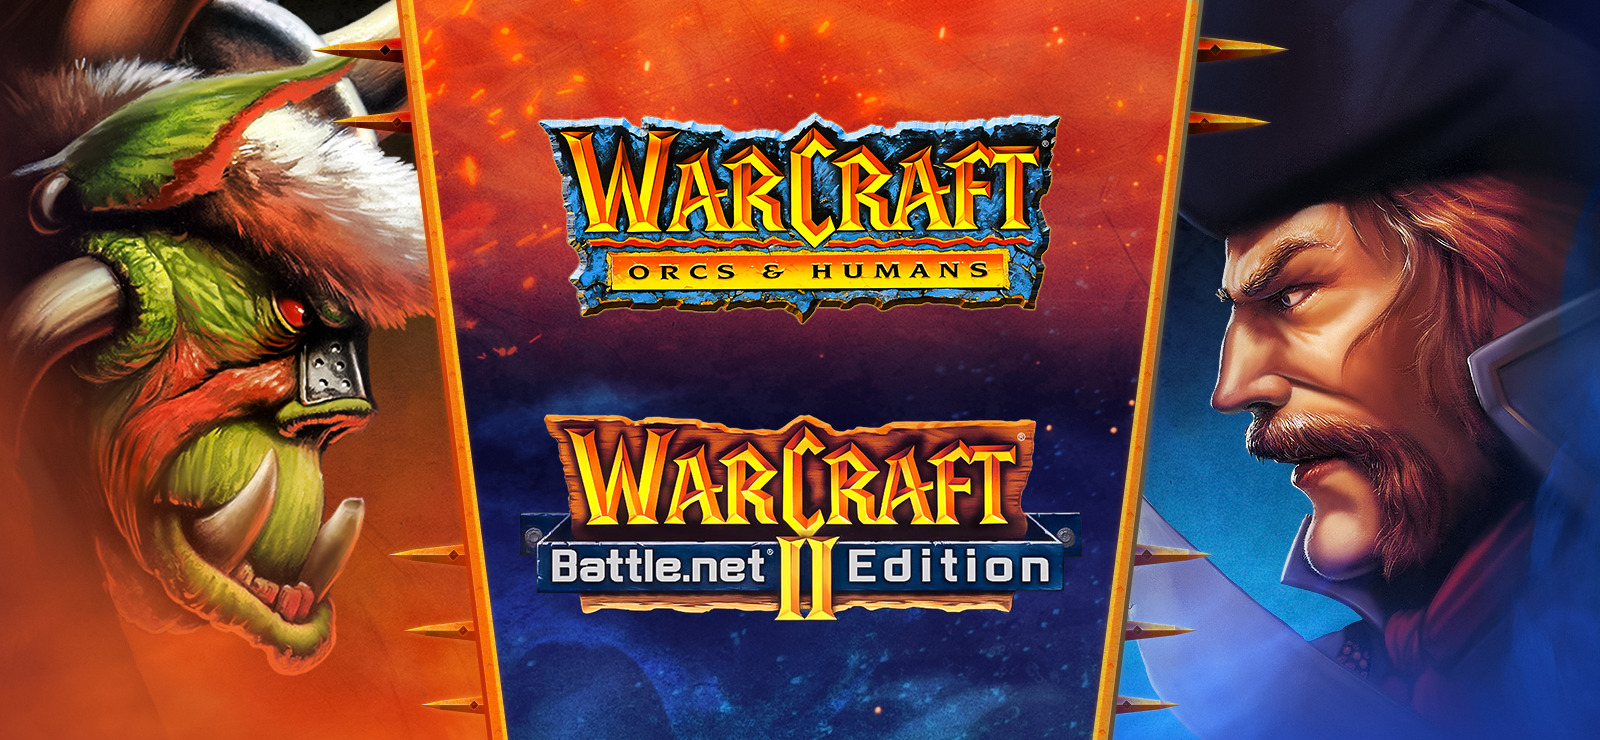 Warcraft I & II Bundle on 